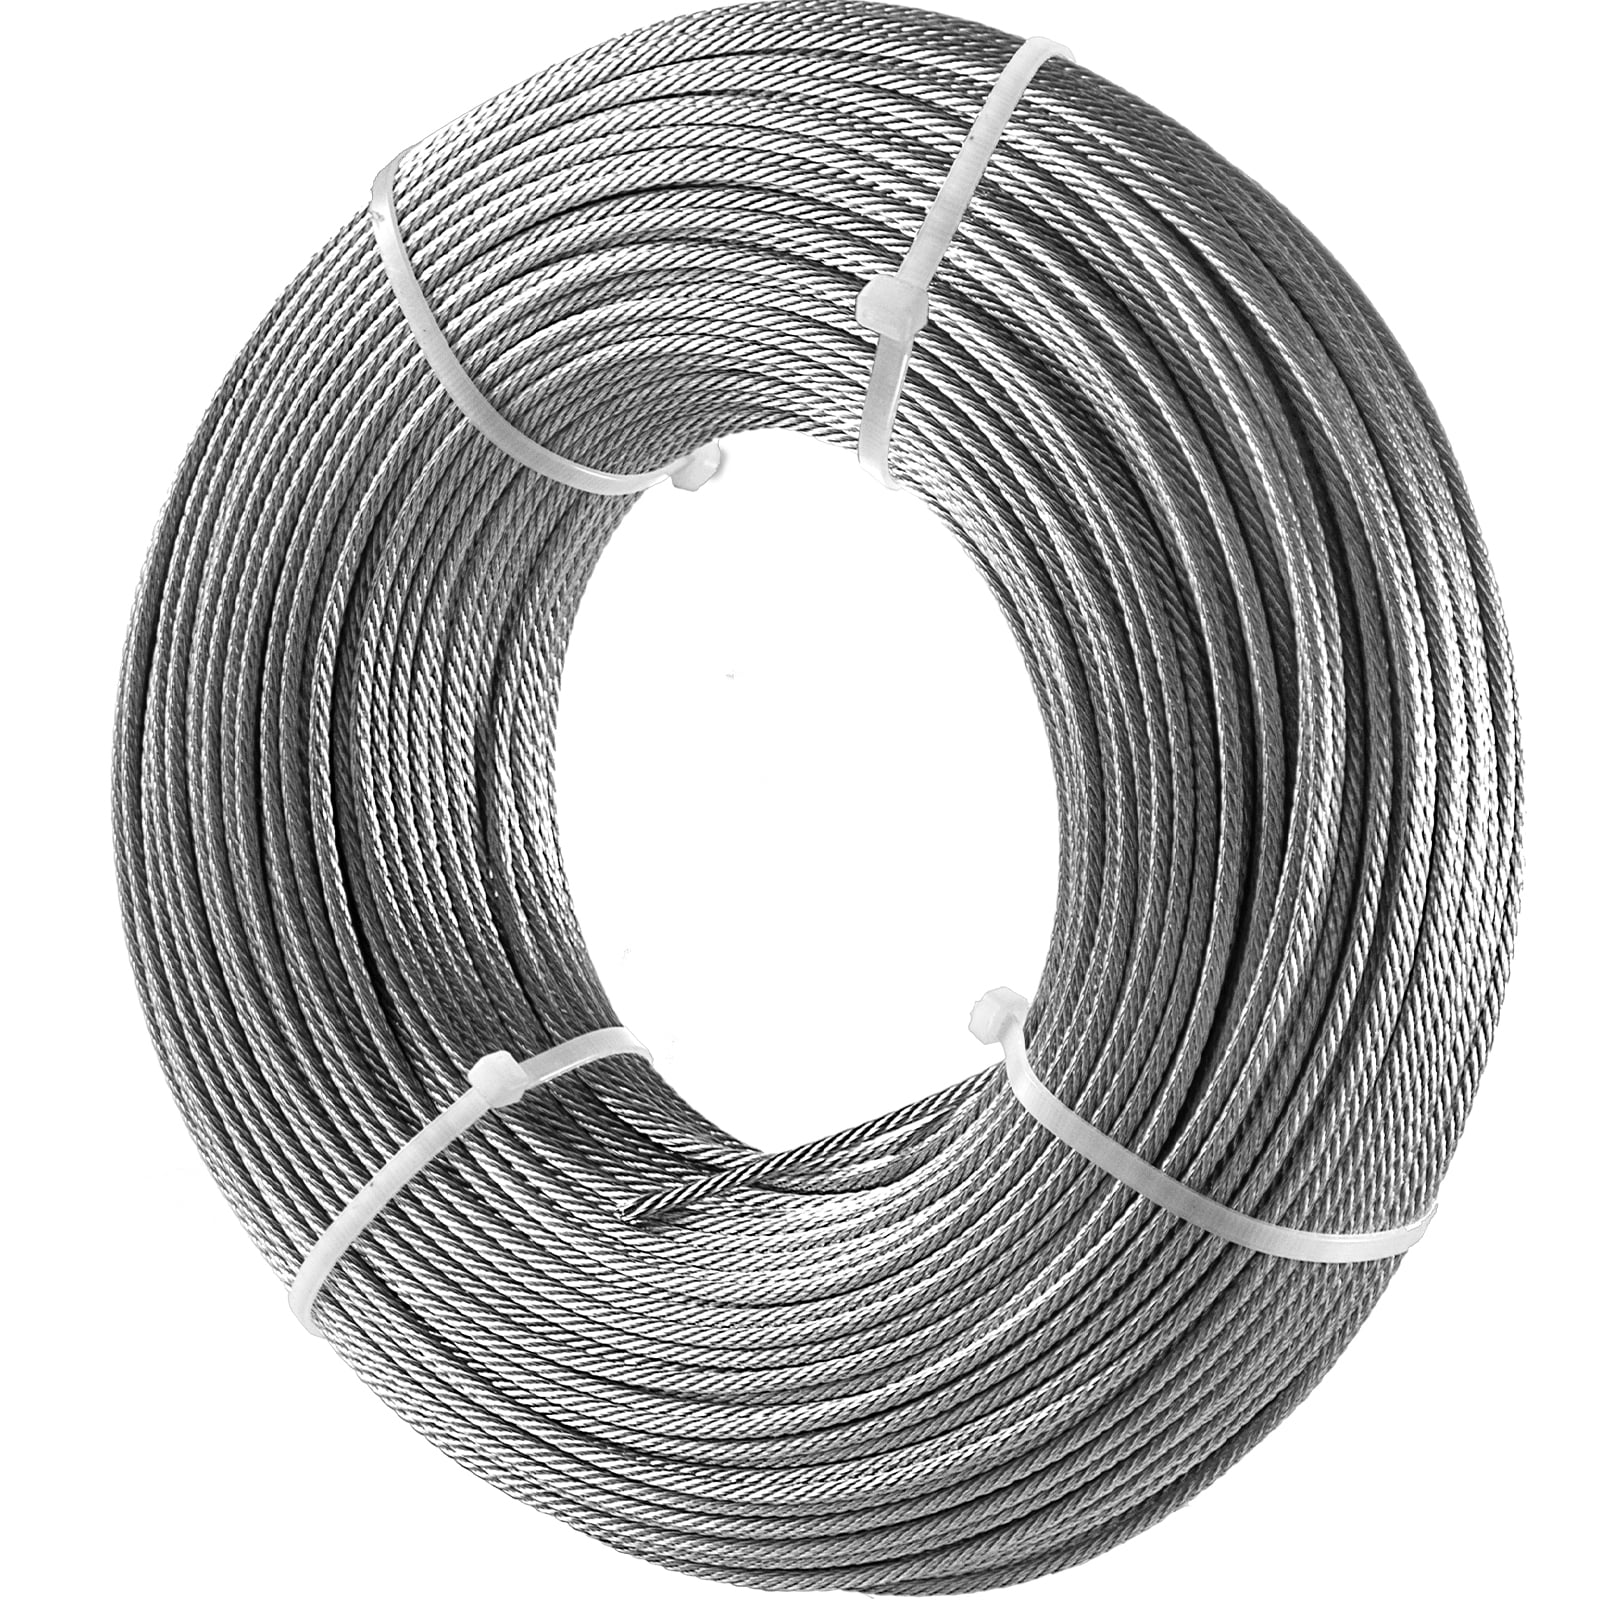 Cable flexible de acero 1/8, 246.1 ft